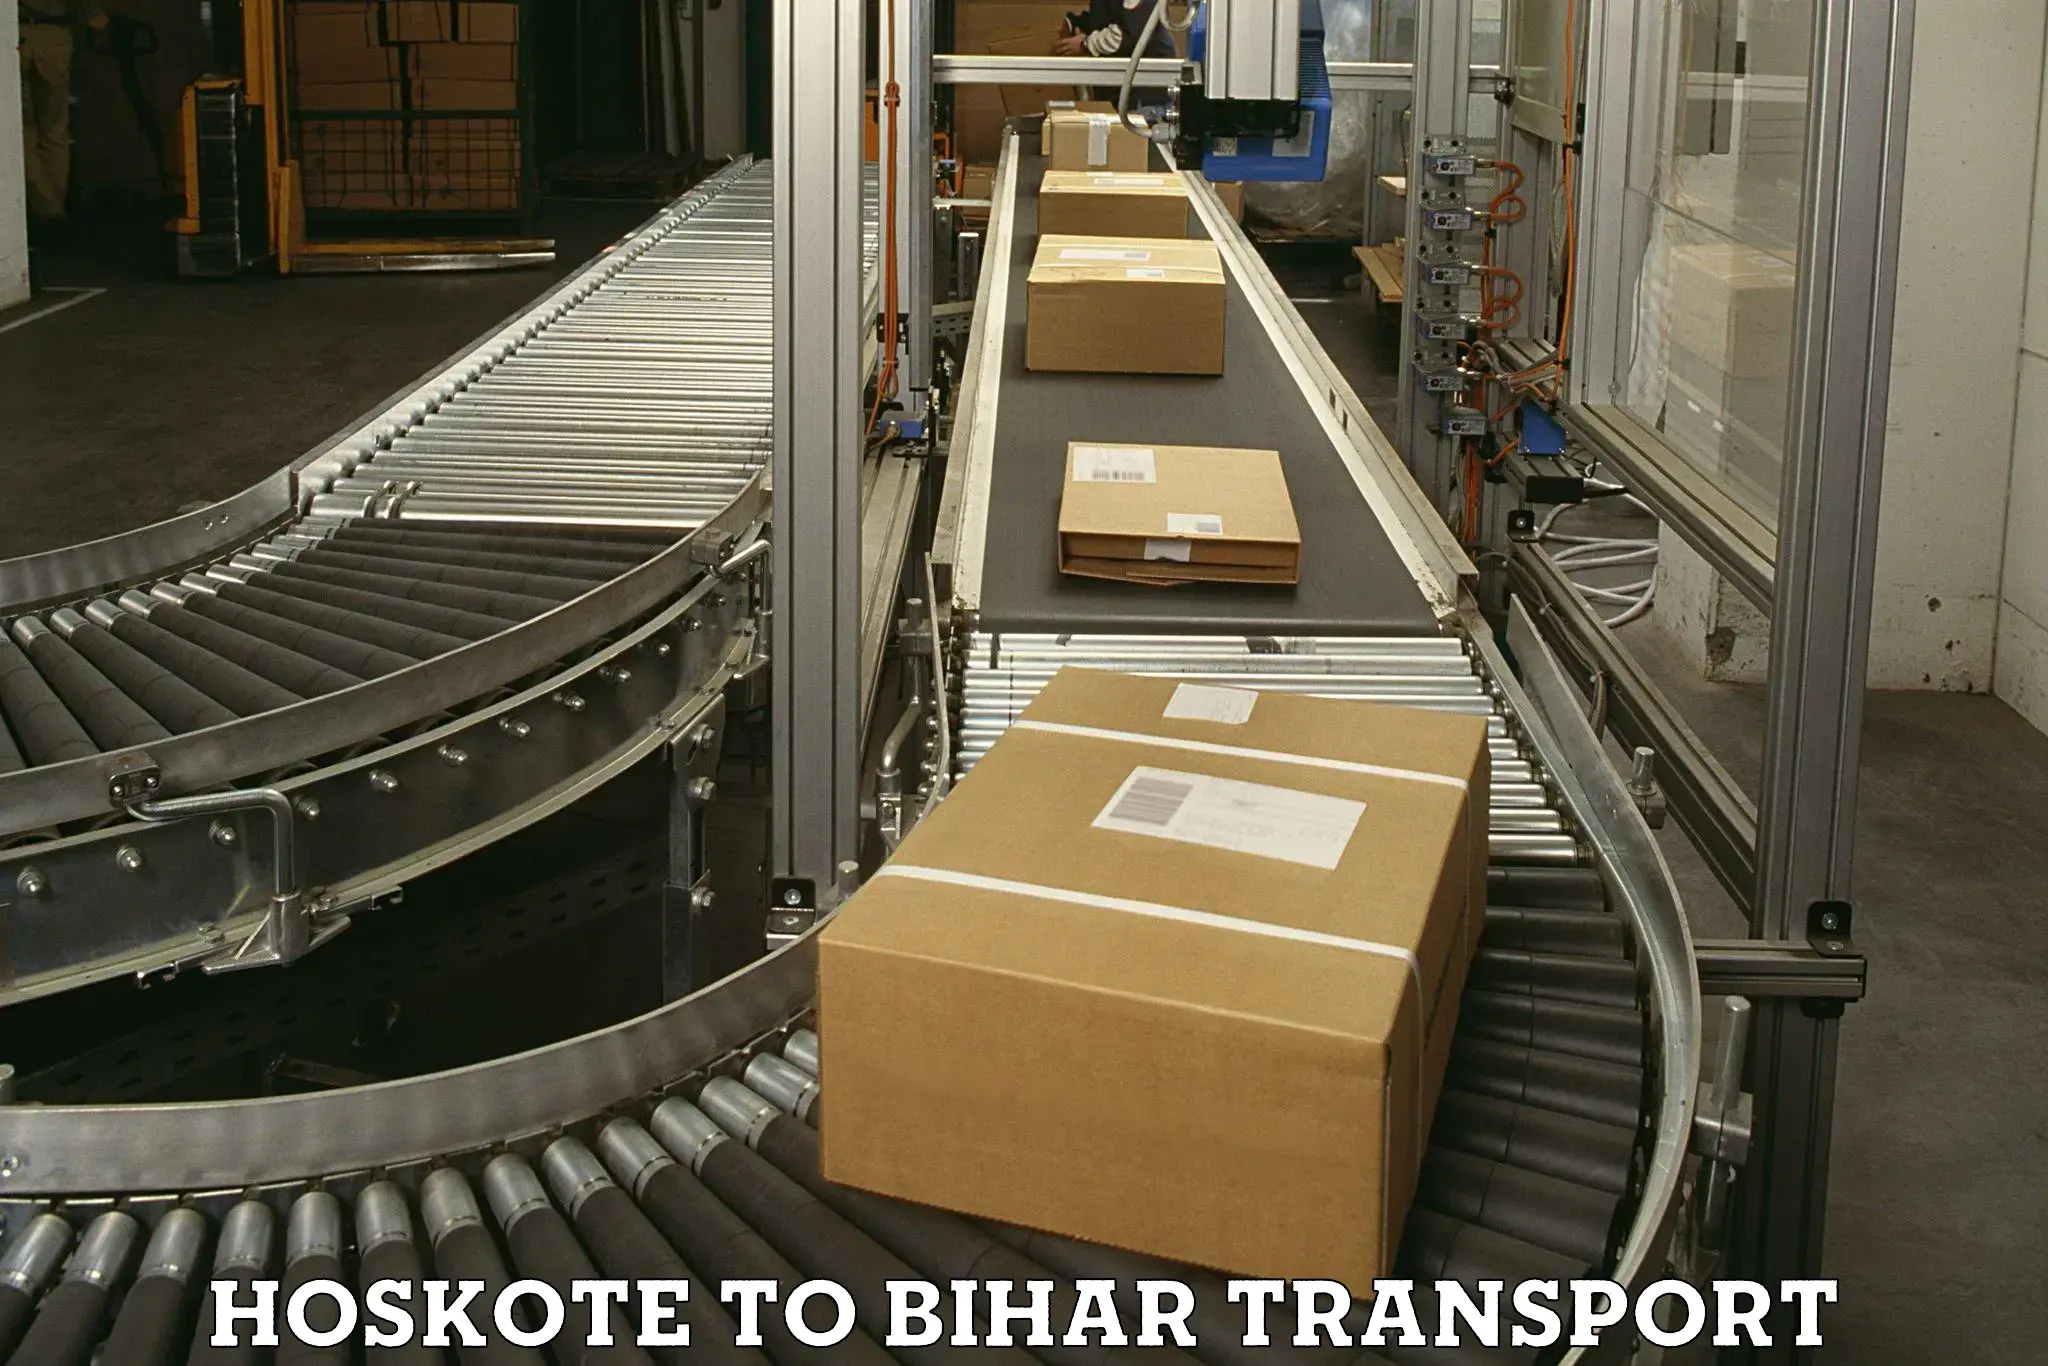 Lorry transport service Hoskote to Mahnar Bazar